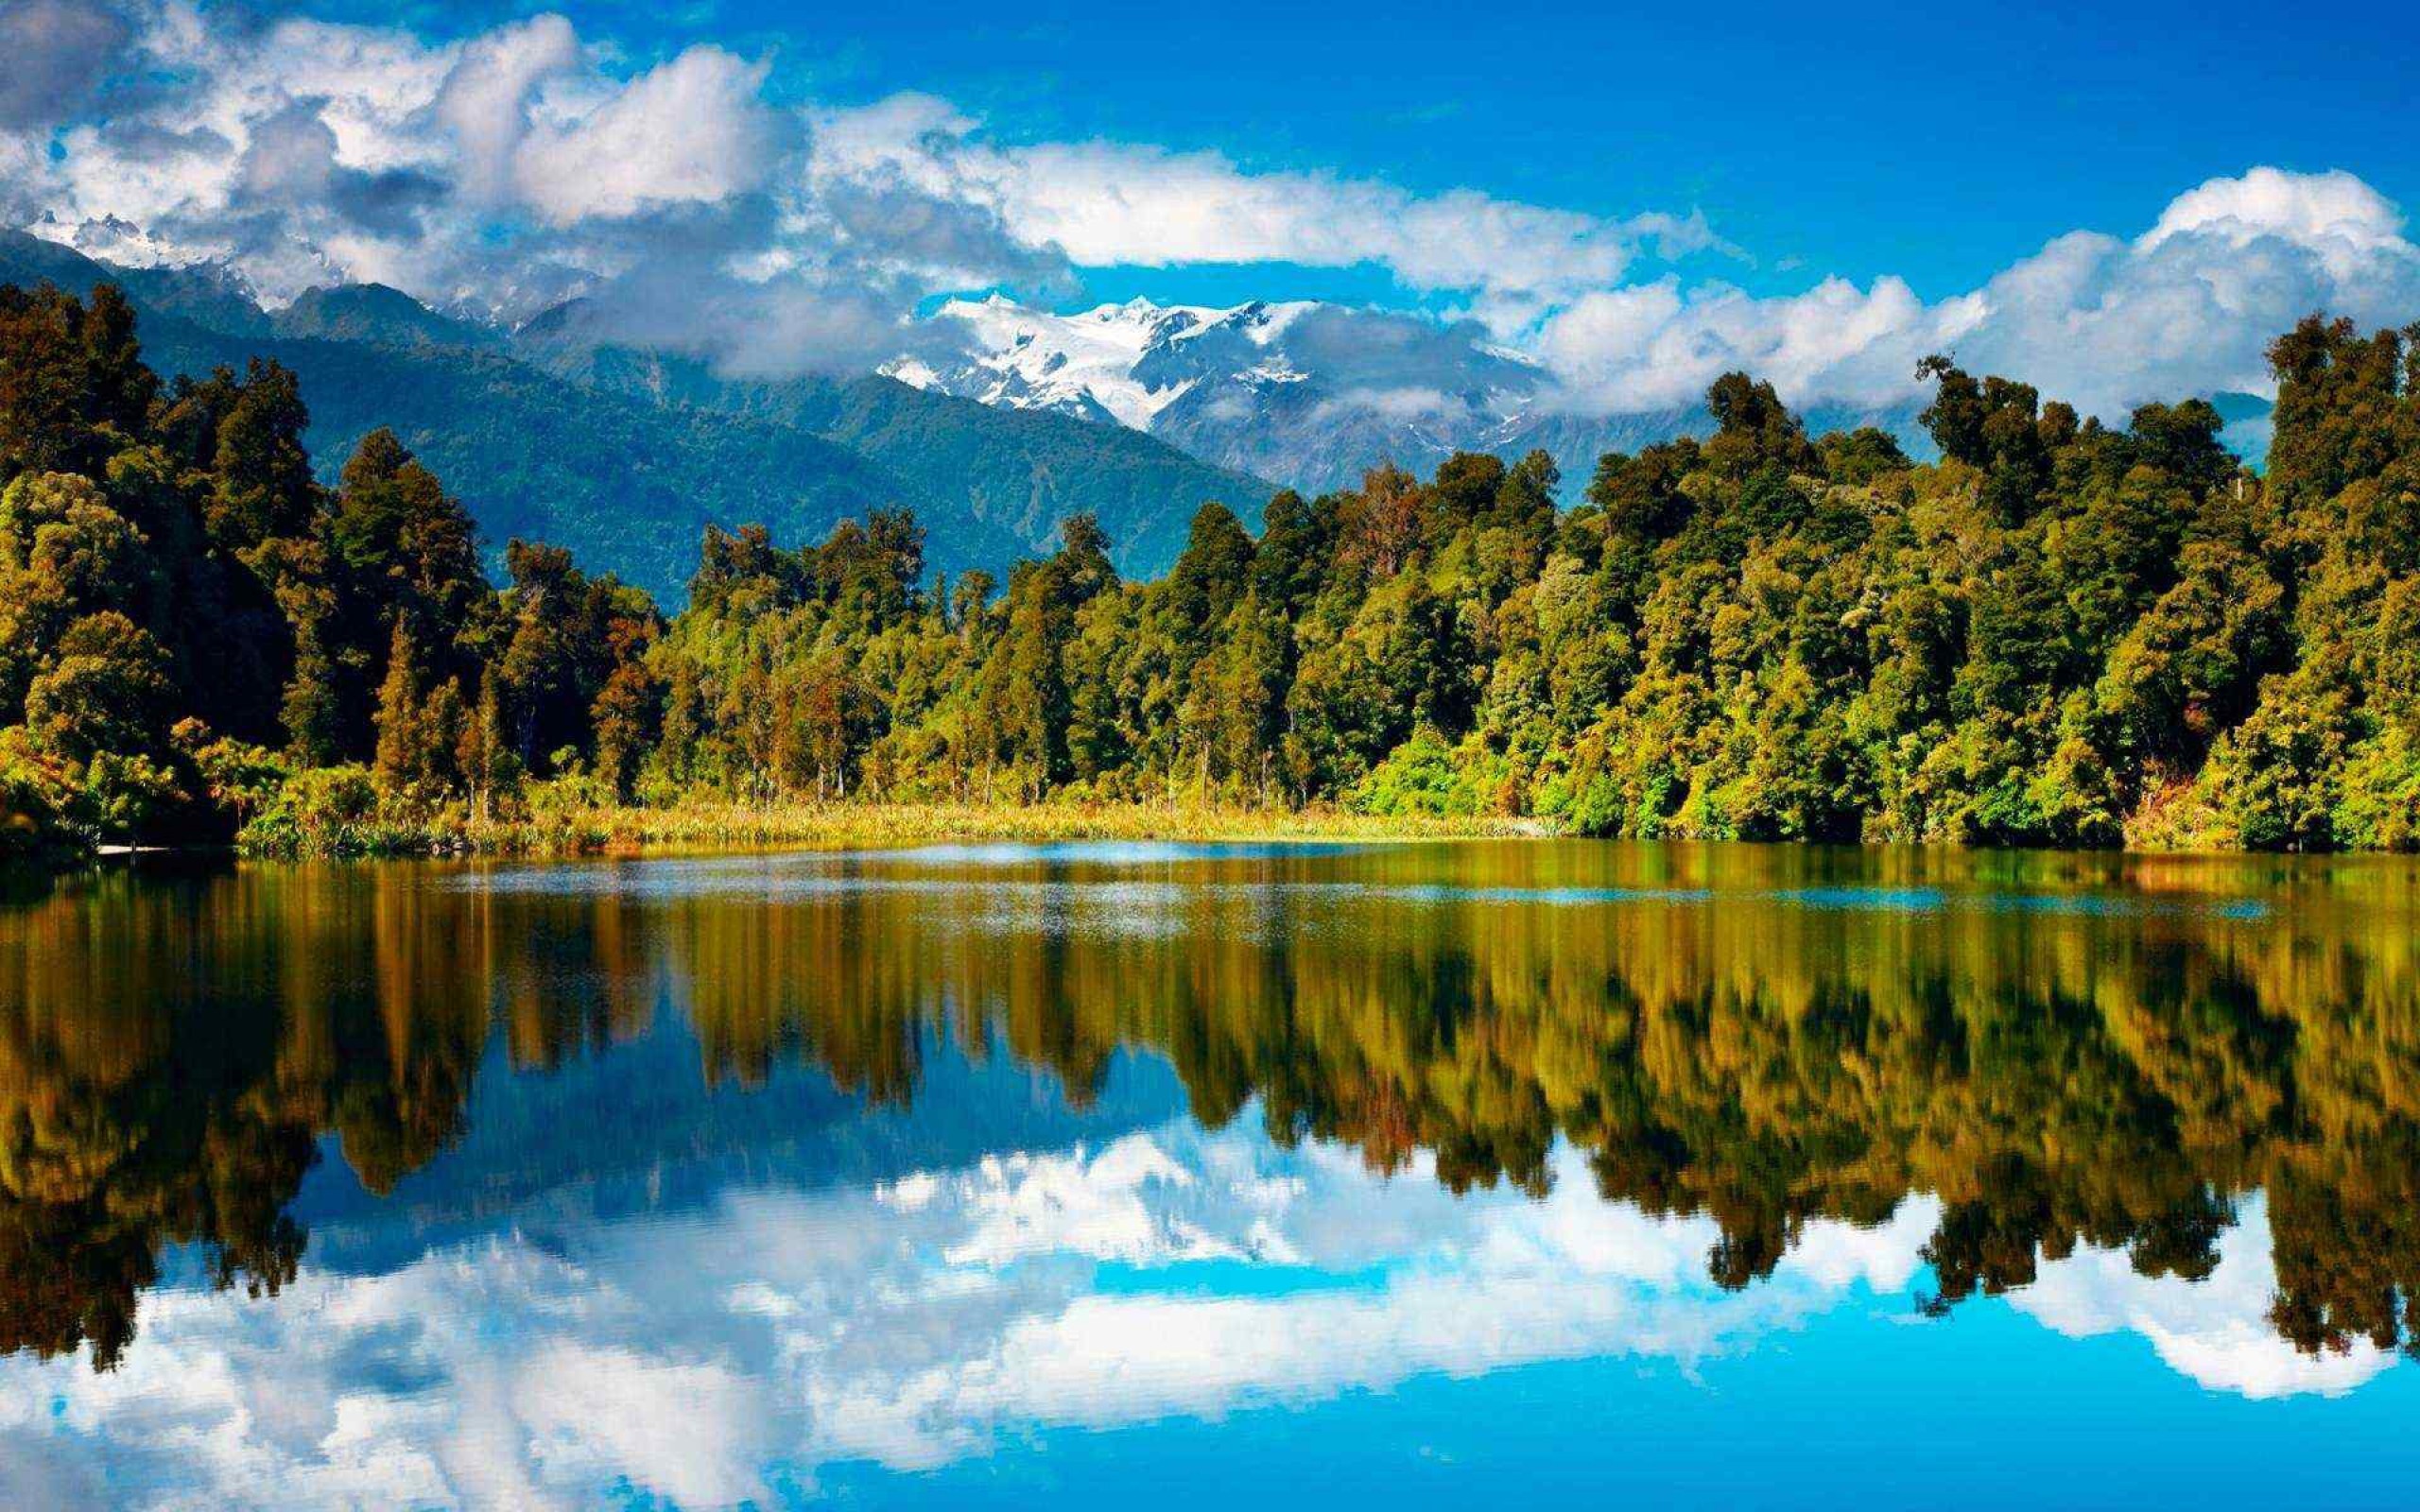 Изображения в разрешении 1080 1920. Озеро Хавеа новая Зеландия. Природа. Пейзажи новой Зеландии. Озеро в лесу.